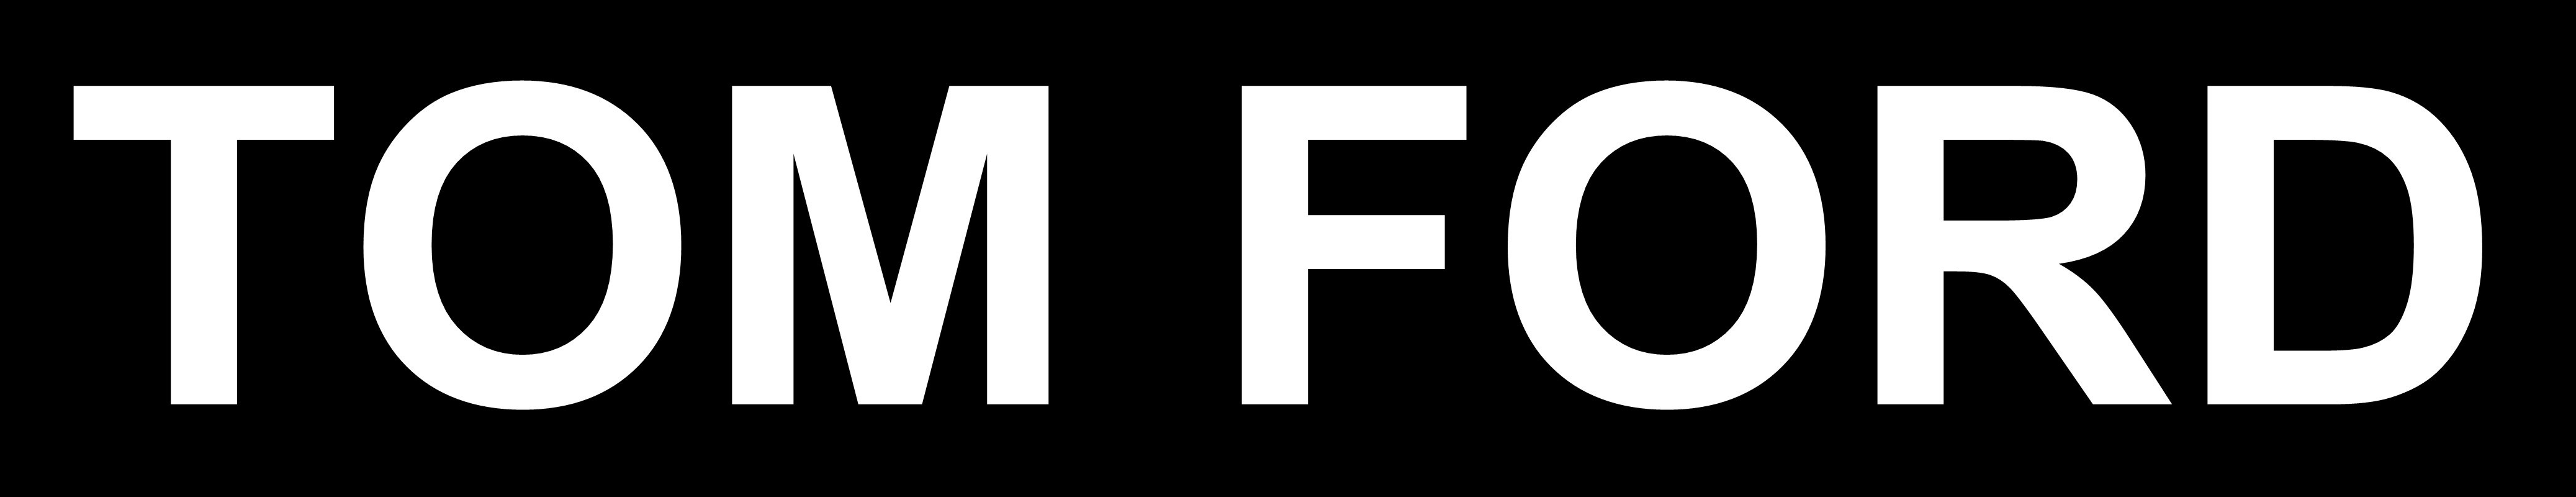 Tom Ford Logo - Tom Ford